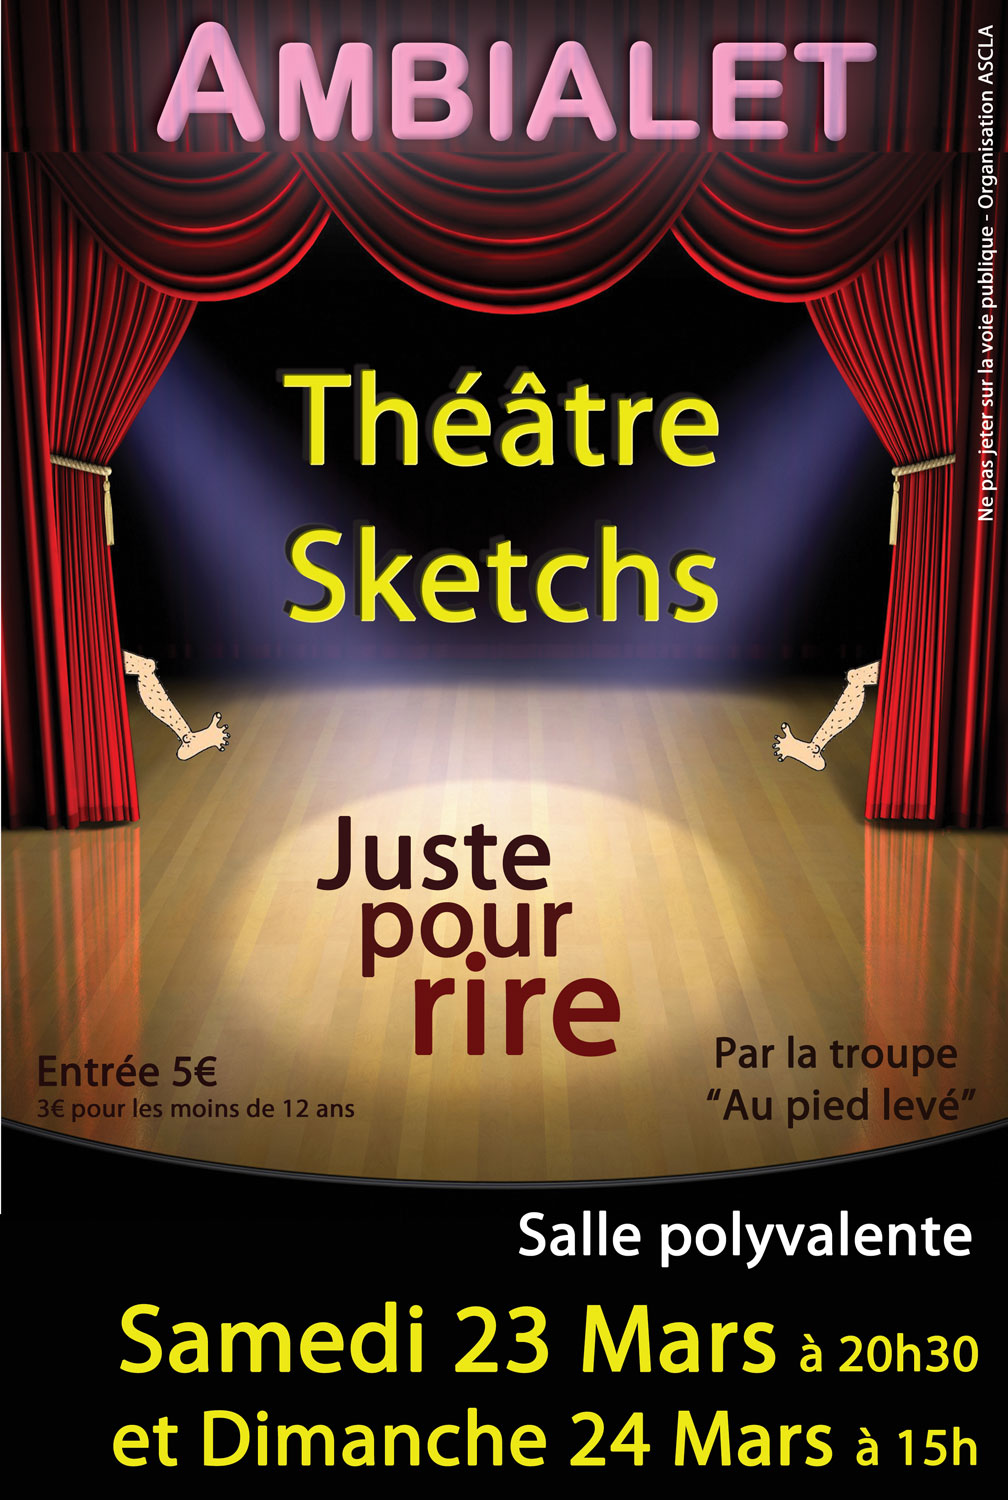 Théâtre sktech "Juste pour rire", à Ambialet